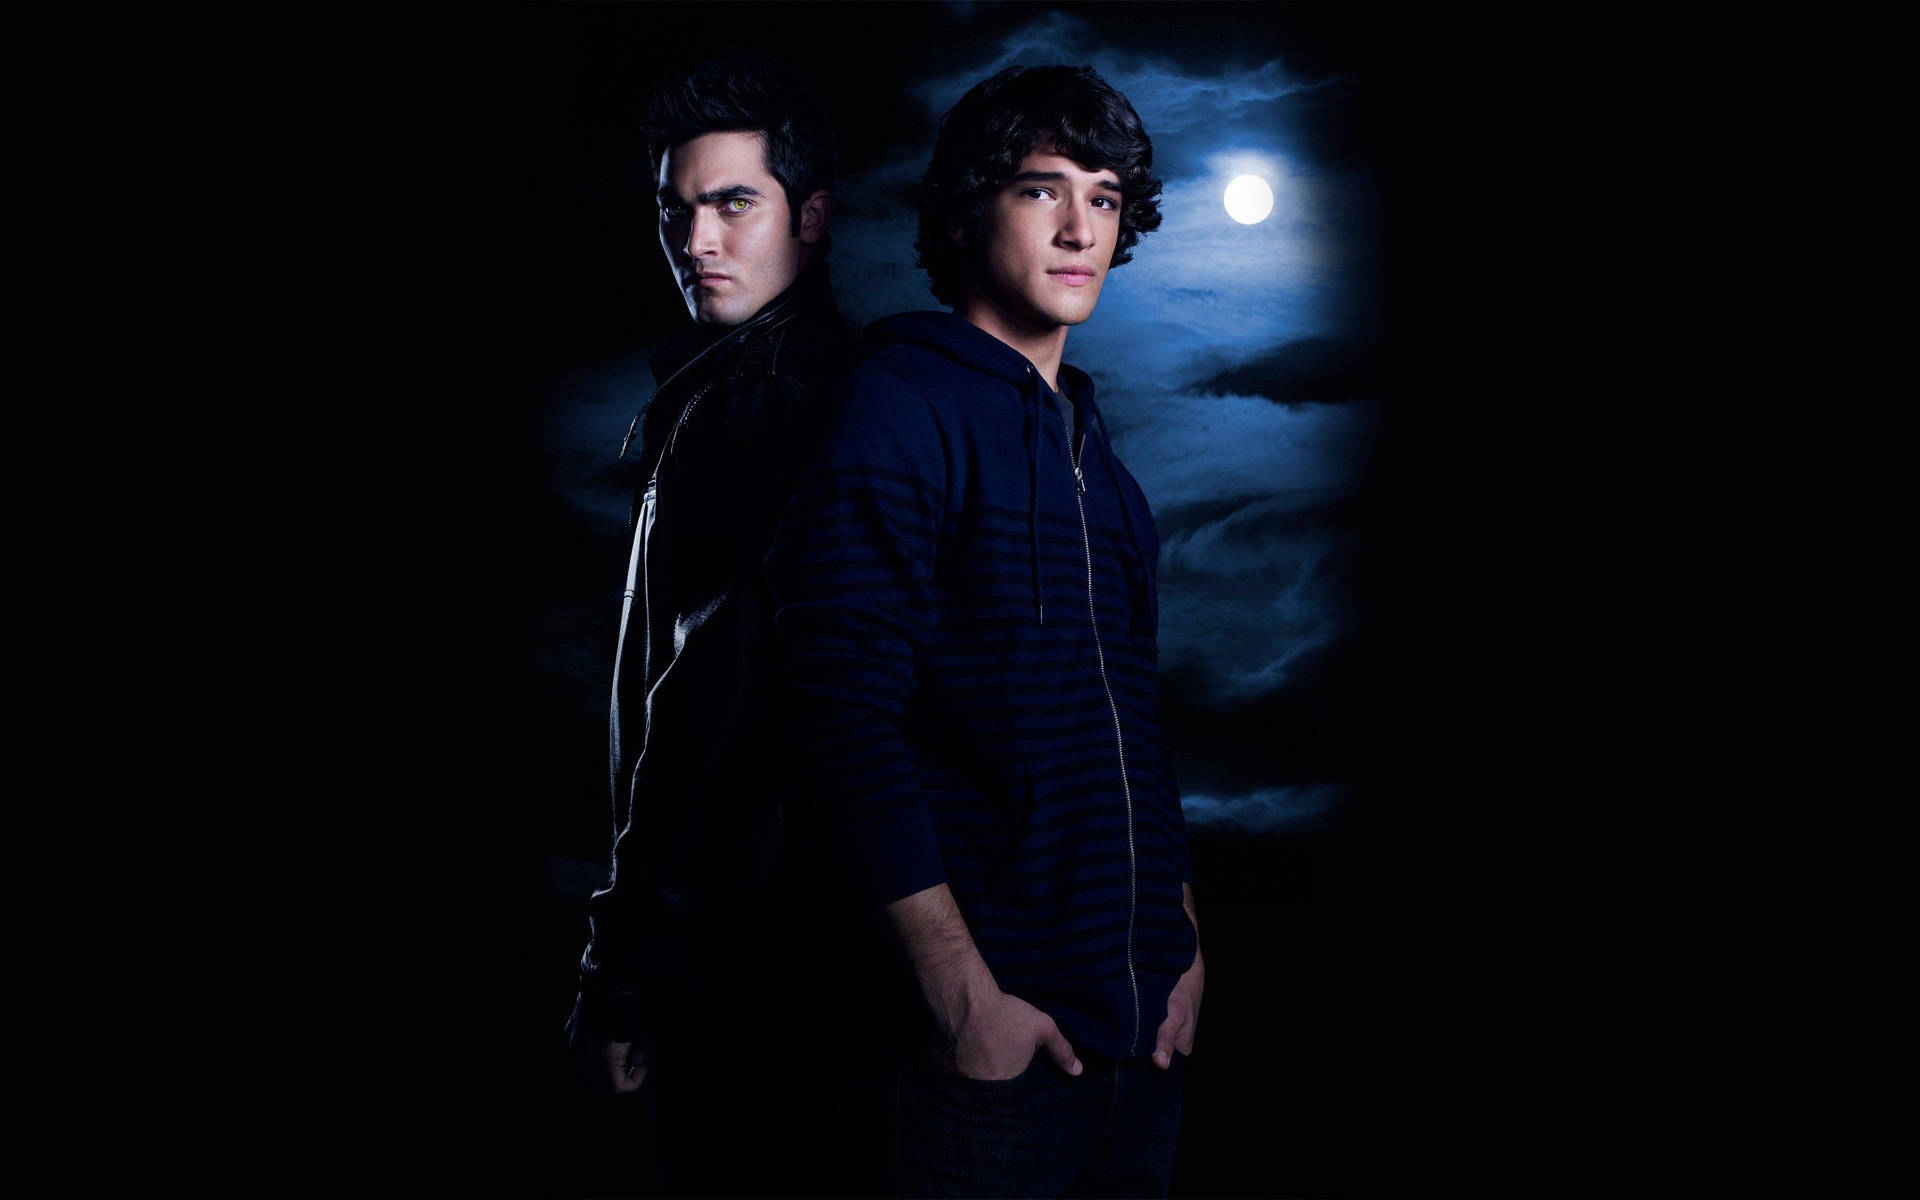 Caption: Powerful Partnership - Scott And Derek In Teen Wolf Background